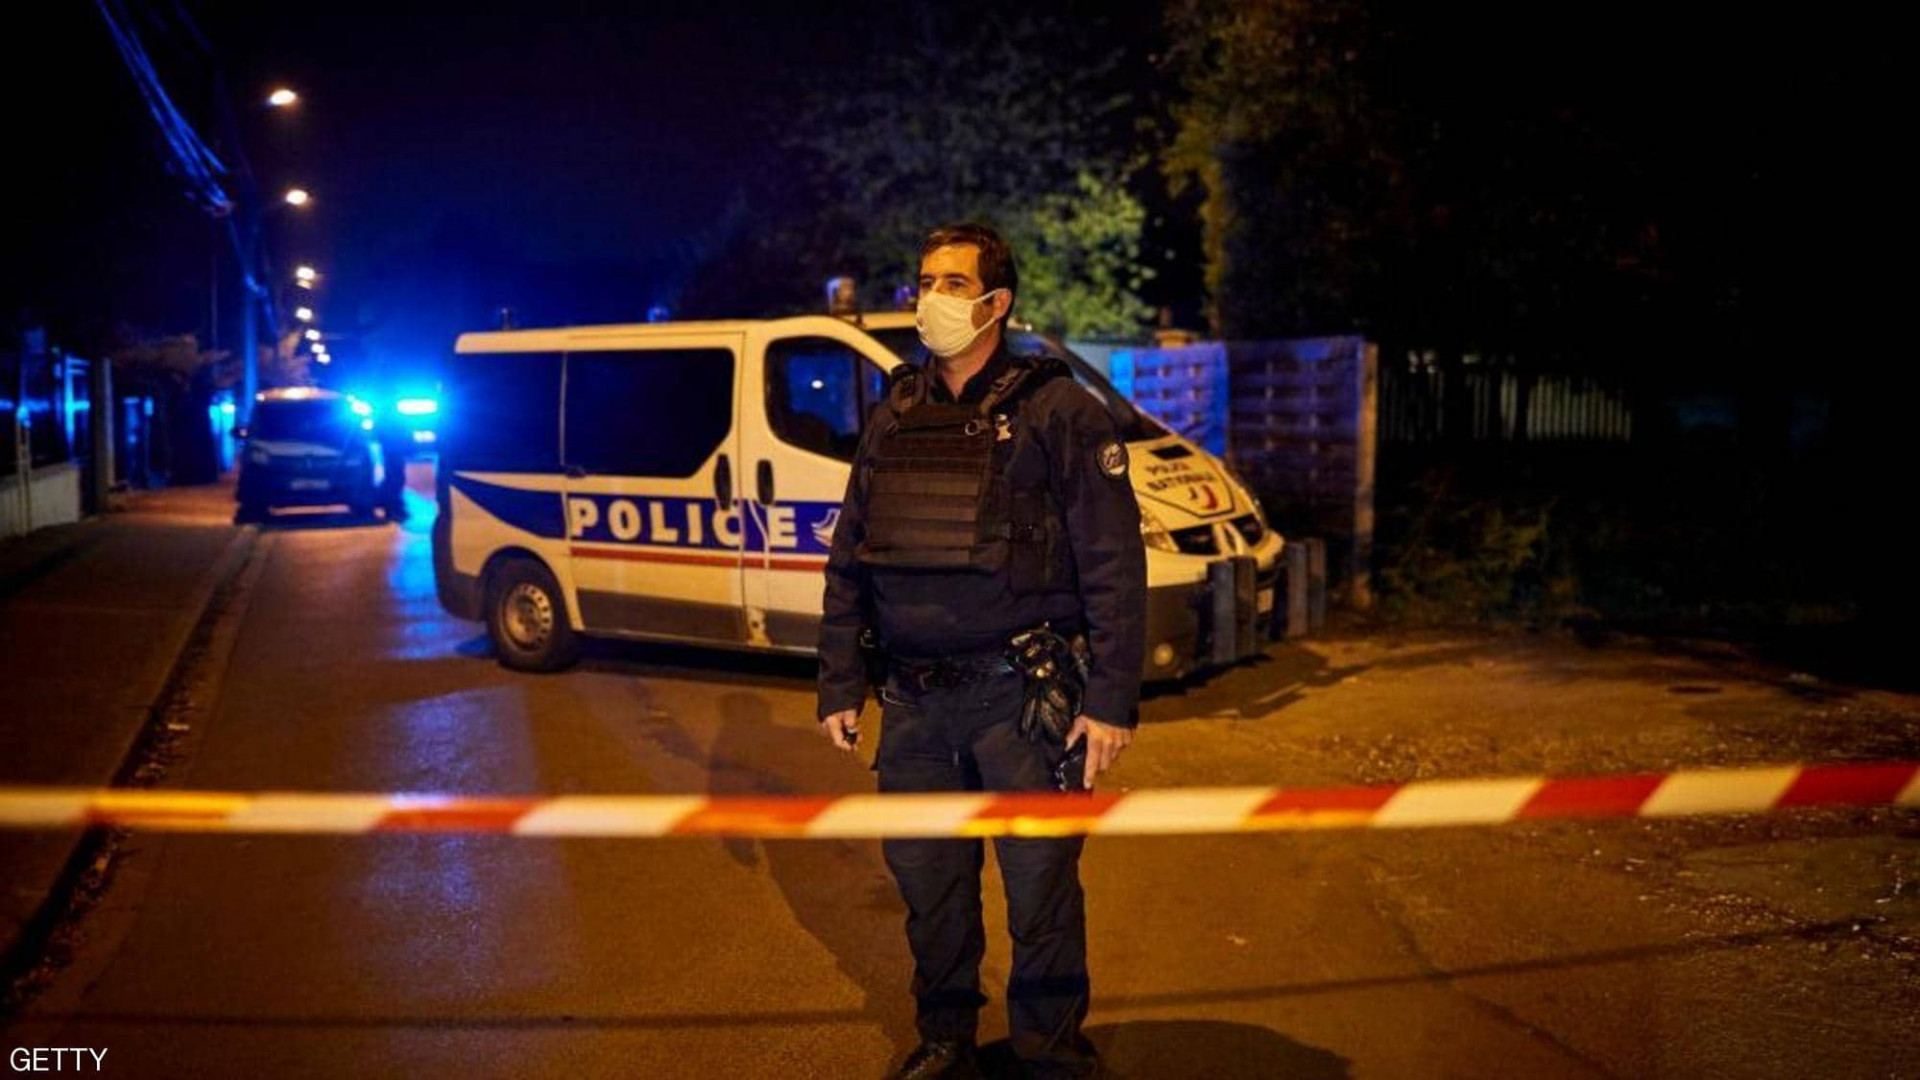 الكشف عن هوية منفذ حادثة "قطع الرأس" في باريس